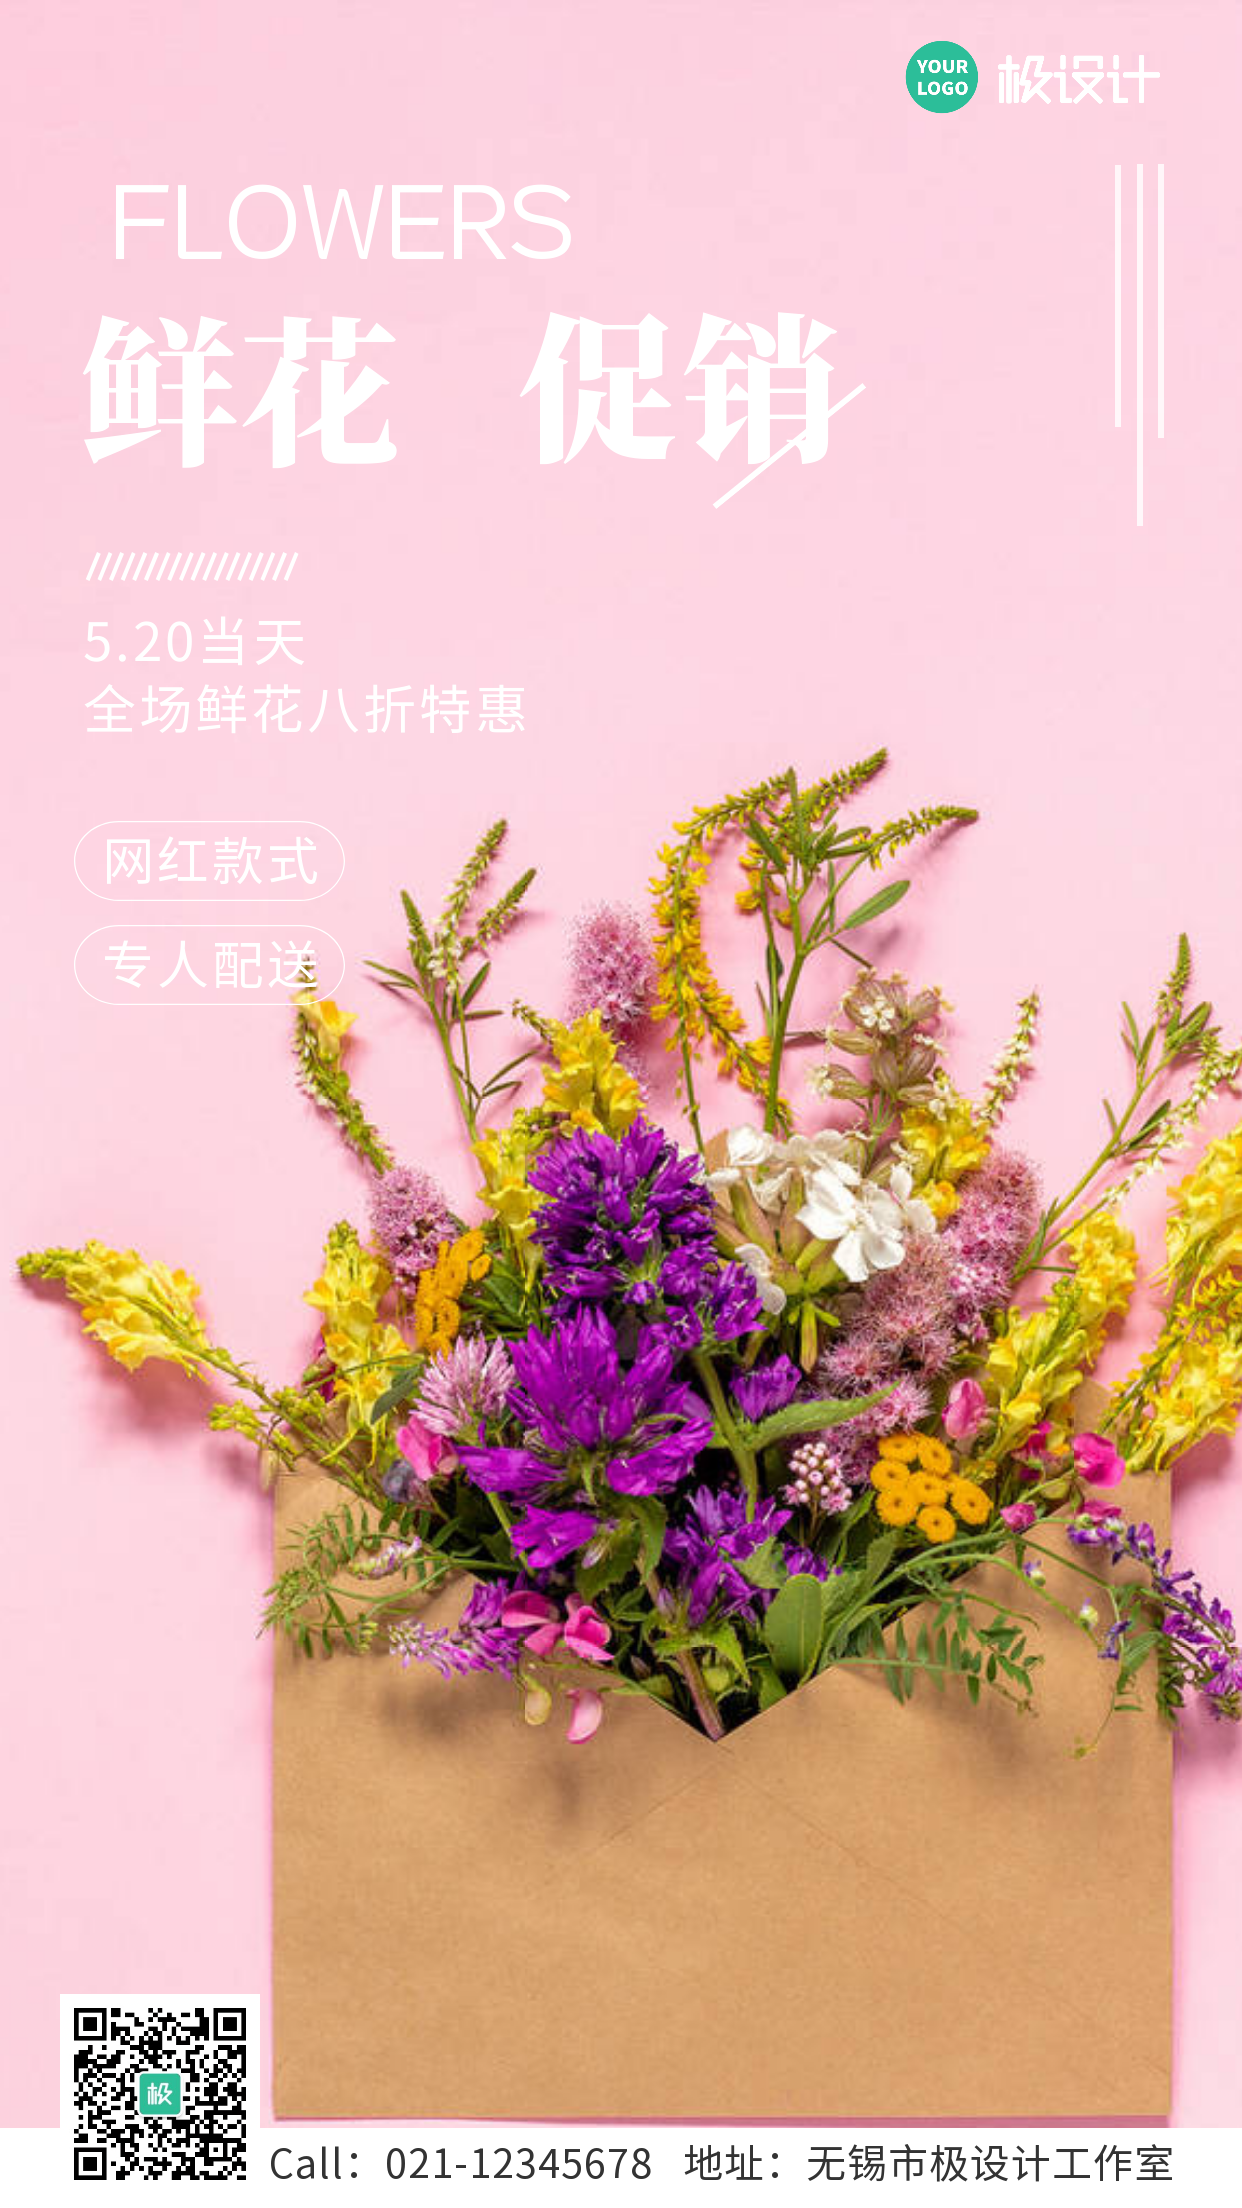 520鲜花促销活动特惠手机营销海报